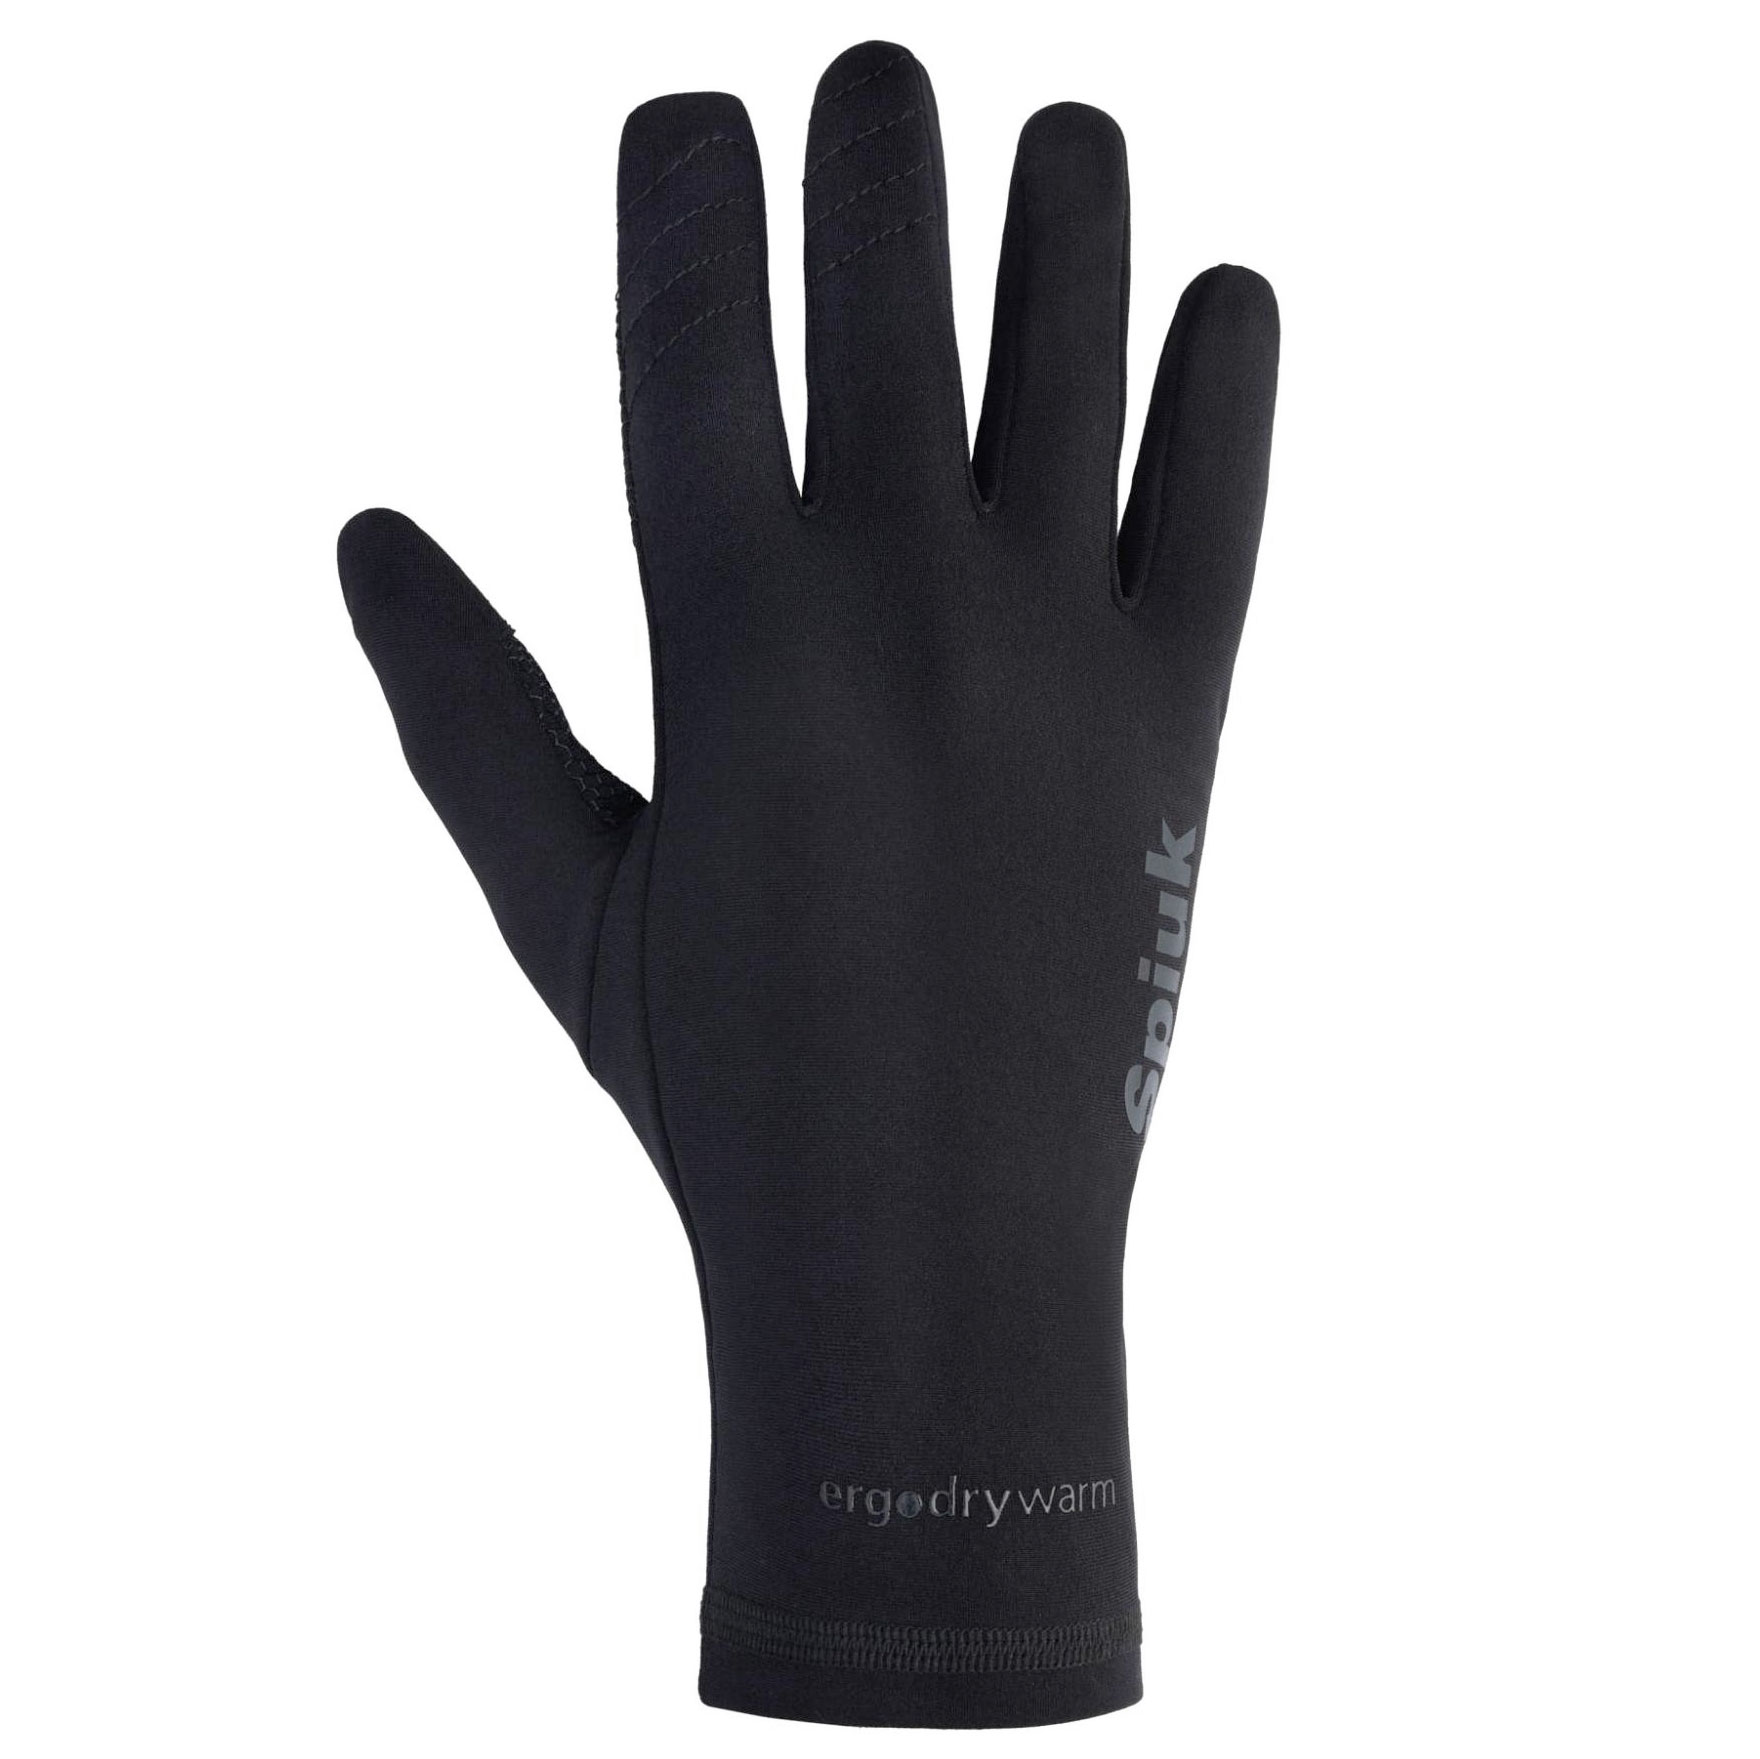 Produktbild von Spiuk ANATOMIC Thermic Handschuhe - schwarz